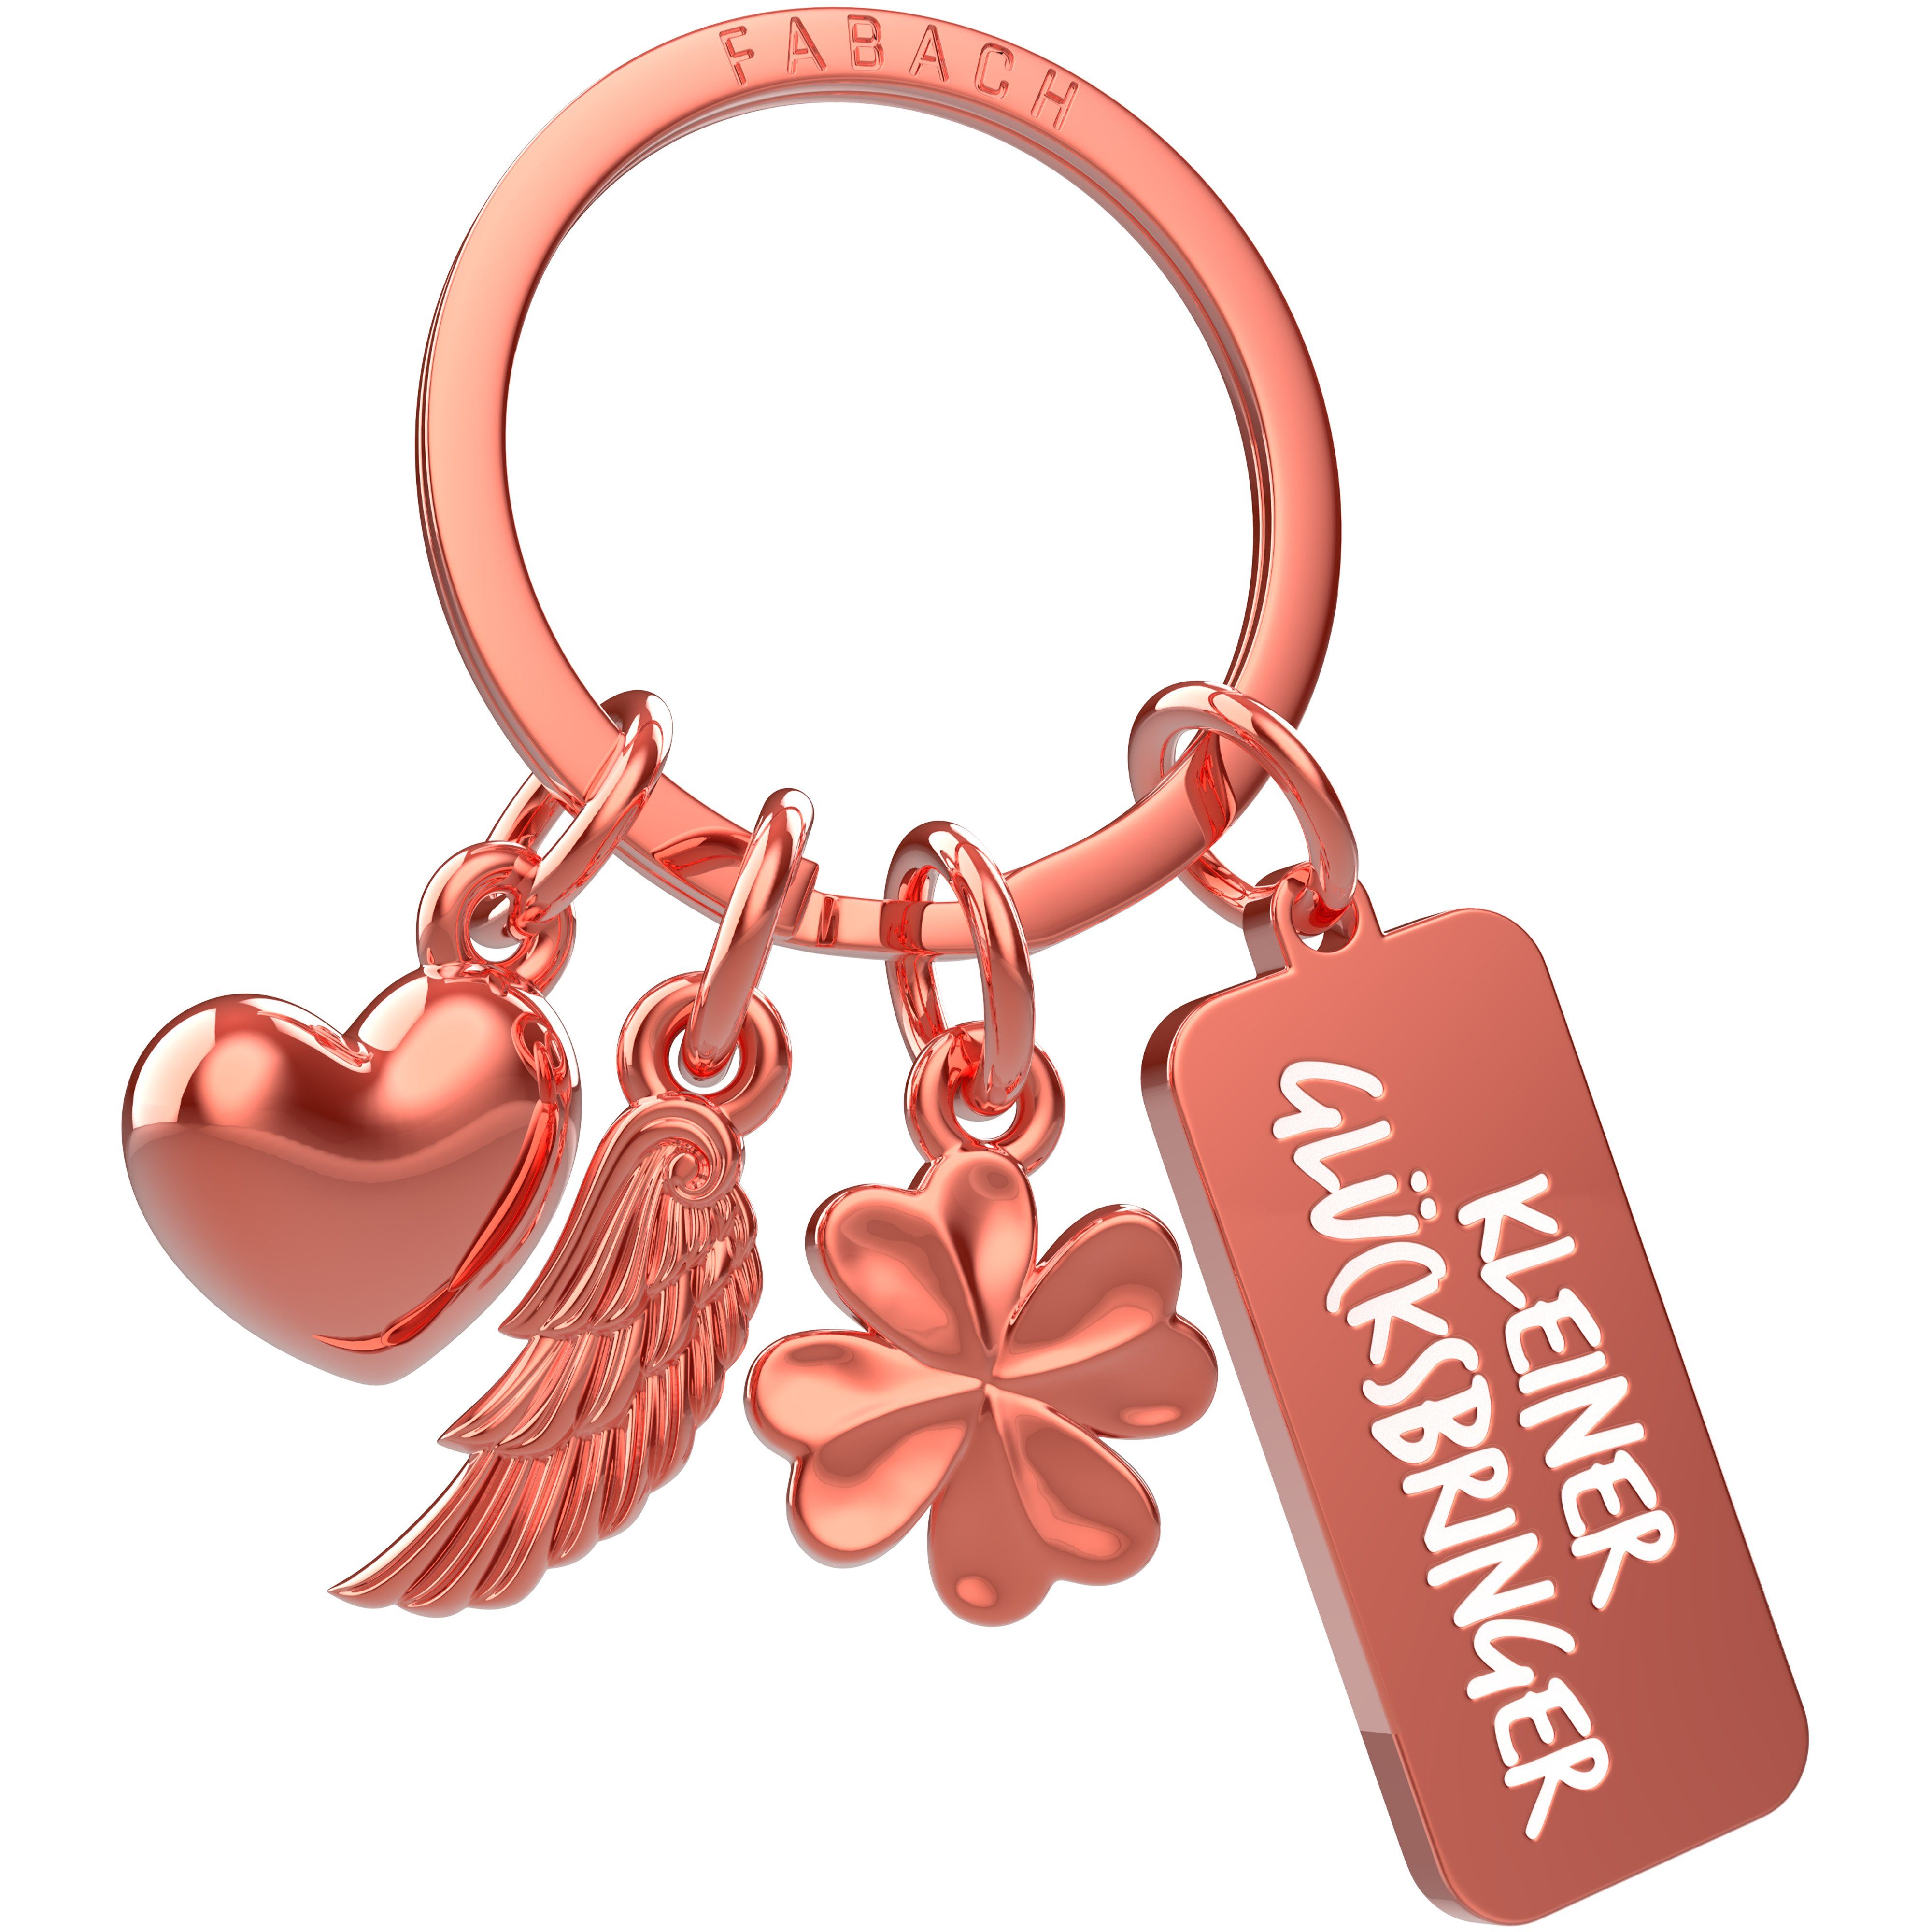 FABACH Schlüsselanhänger 3 Charms mit Gravur - Kleiner Glücksbringer - Schutzengel Geschenk Roségold